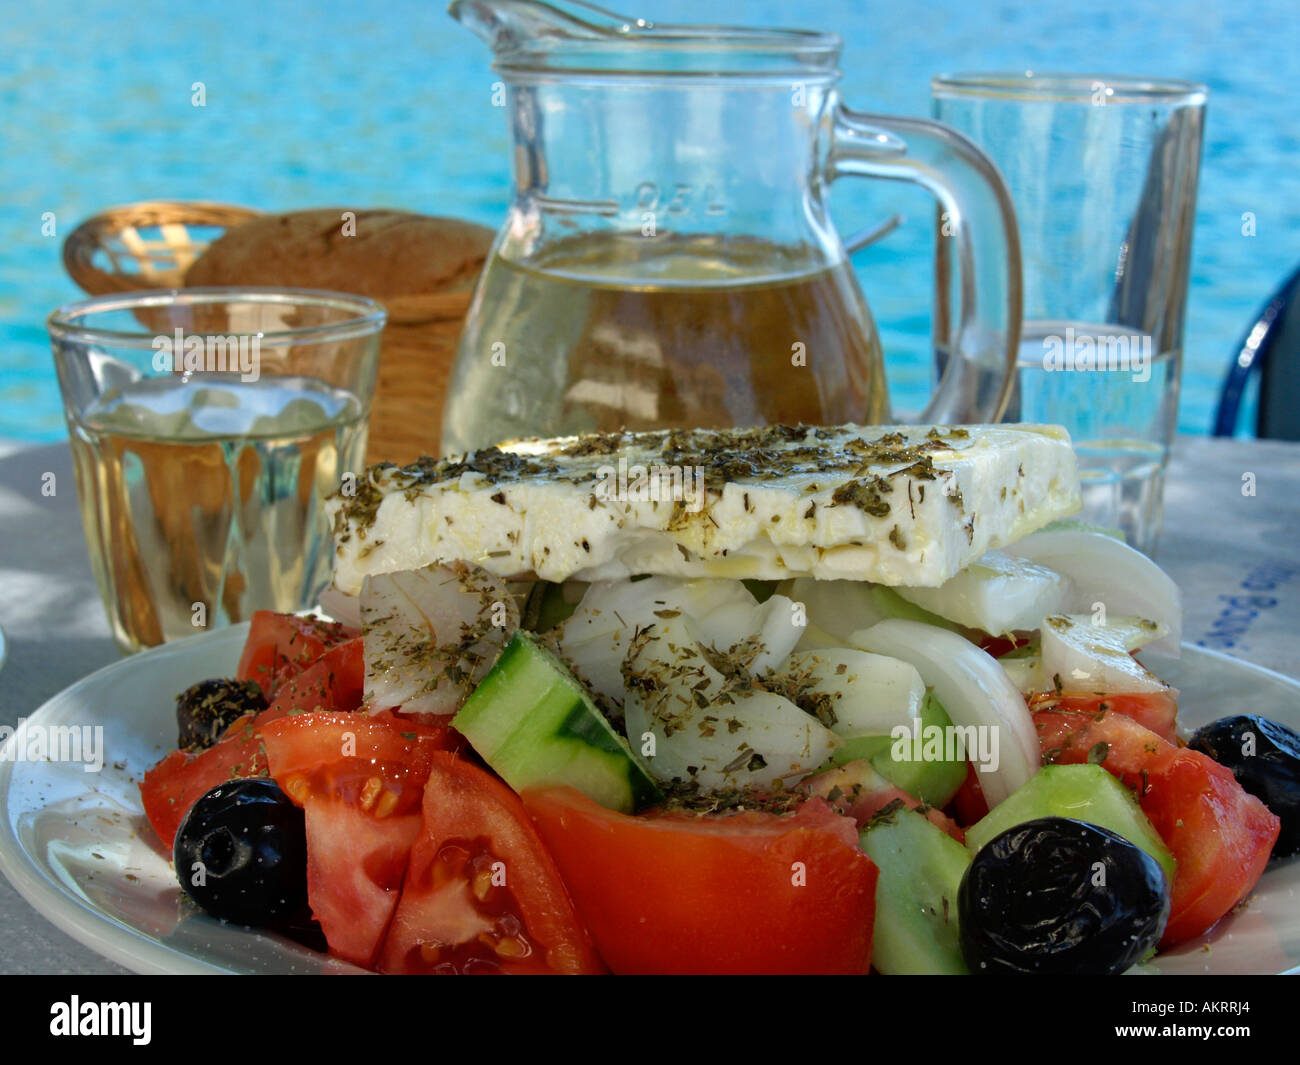 Ensalada griega una jarra llena de vino blanco Retsina cesta con pan sobre una tabla en el fondo color turquesa del Mar Mediterráneo Foto de stock